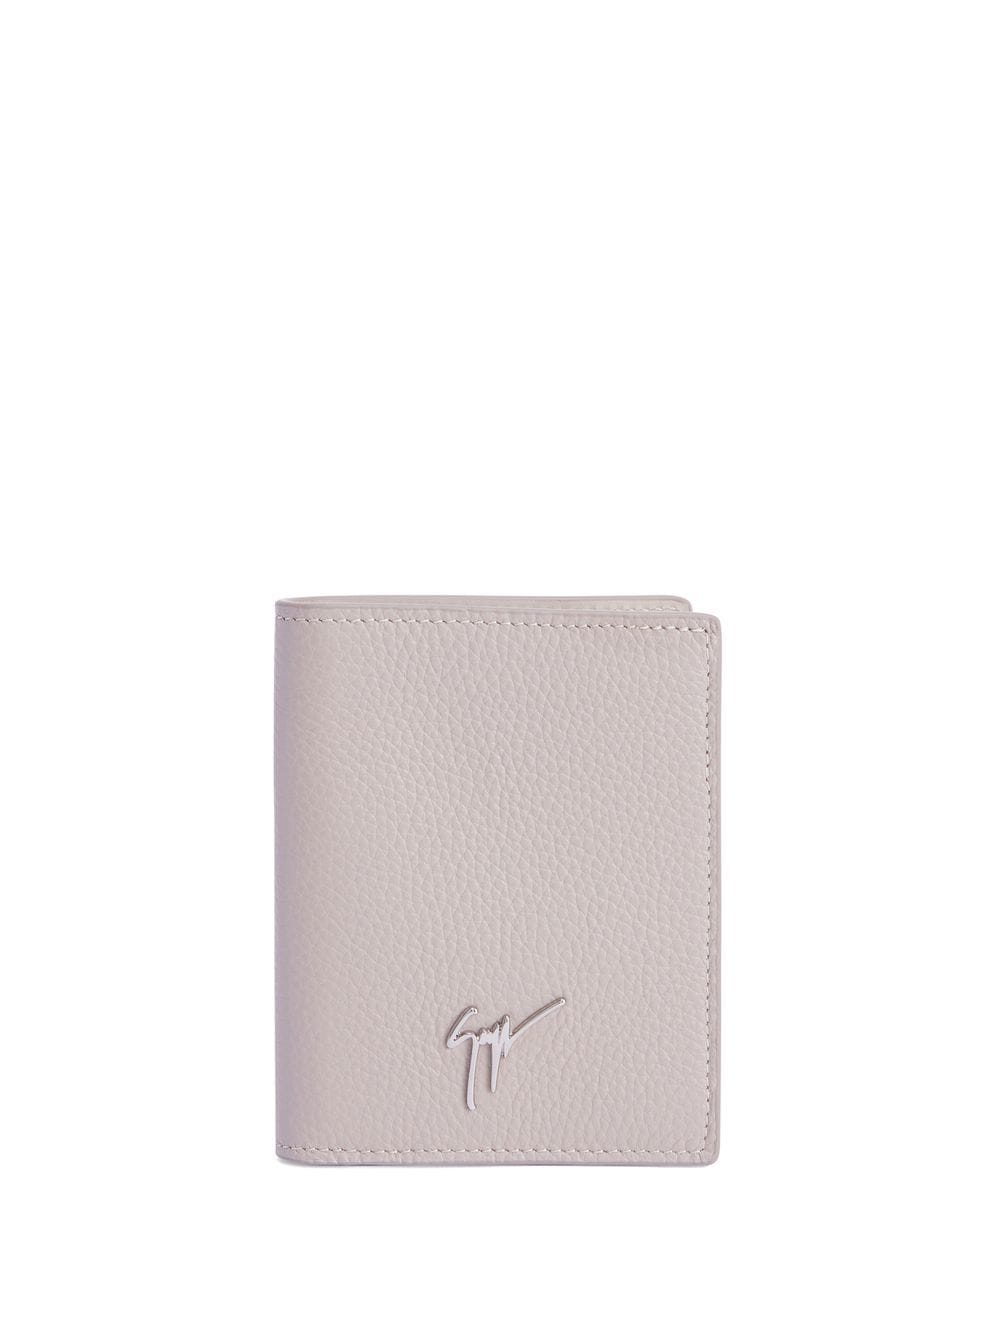 Giuseppe Zanotti Albert bi-fold wallet - White von Giuseppe Zanotti